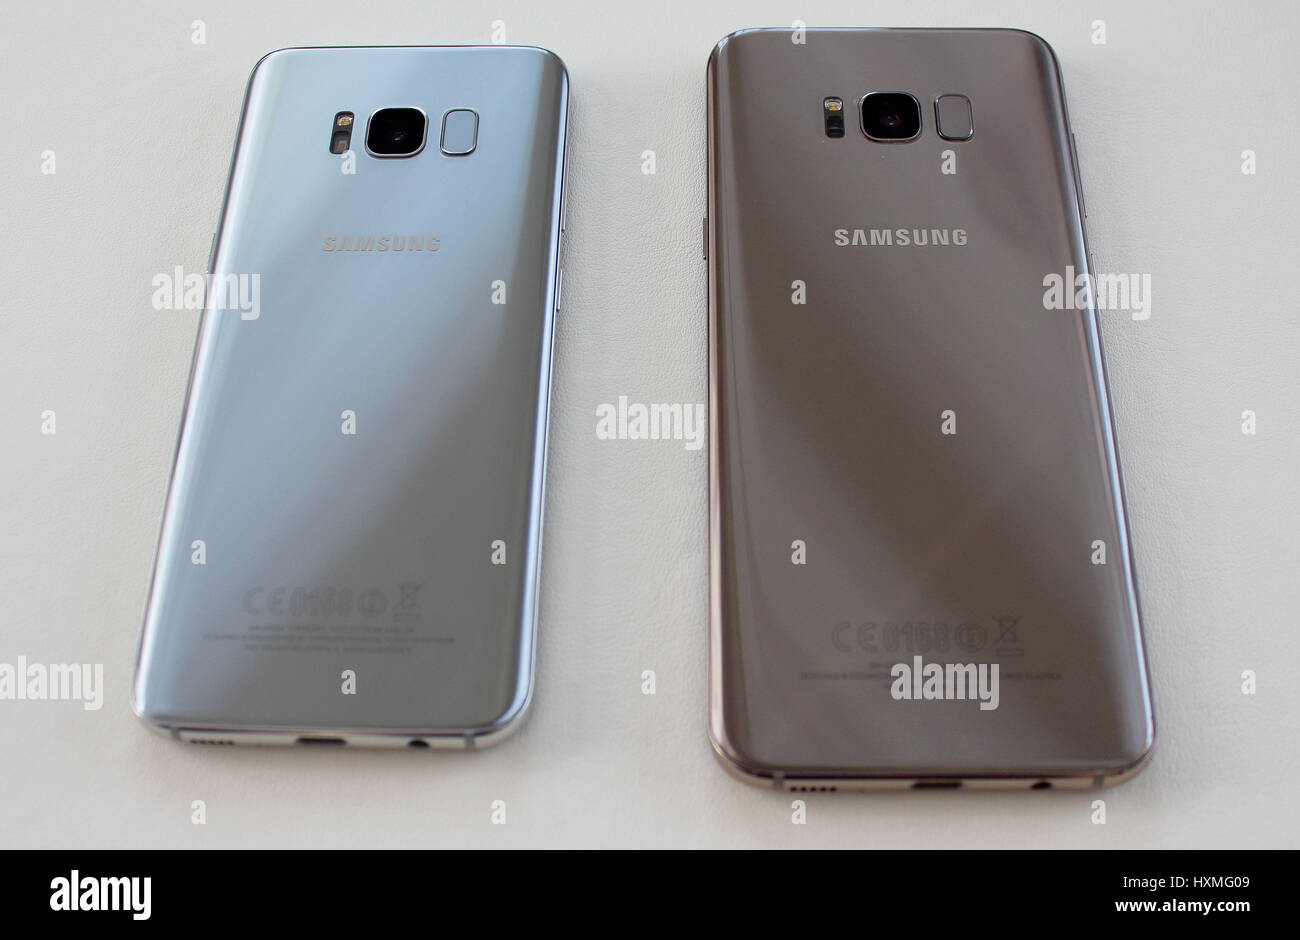 Il nuovo Samsung Galaxy S8 (sinistra) e S8+ sul display a Londra, la società del primo poiché essi sono stati costretti a ricordare la sua nota7 dispositivo nel tardo 2016 sul fuoco e i timori per la sicurezza. Foto Stock